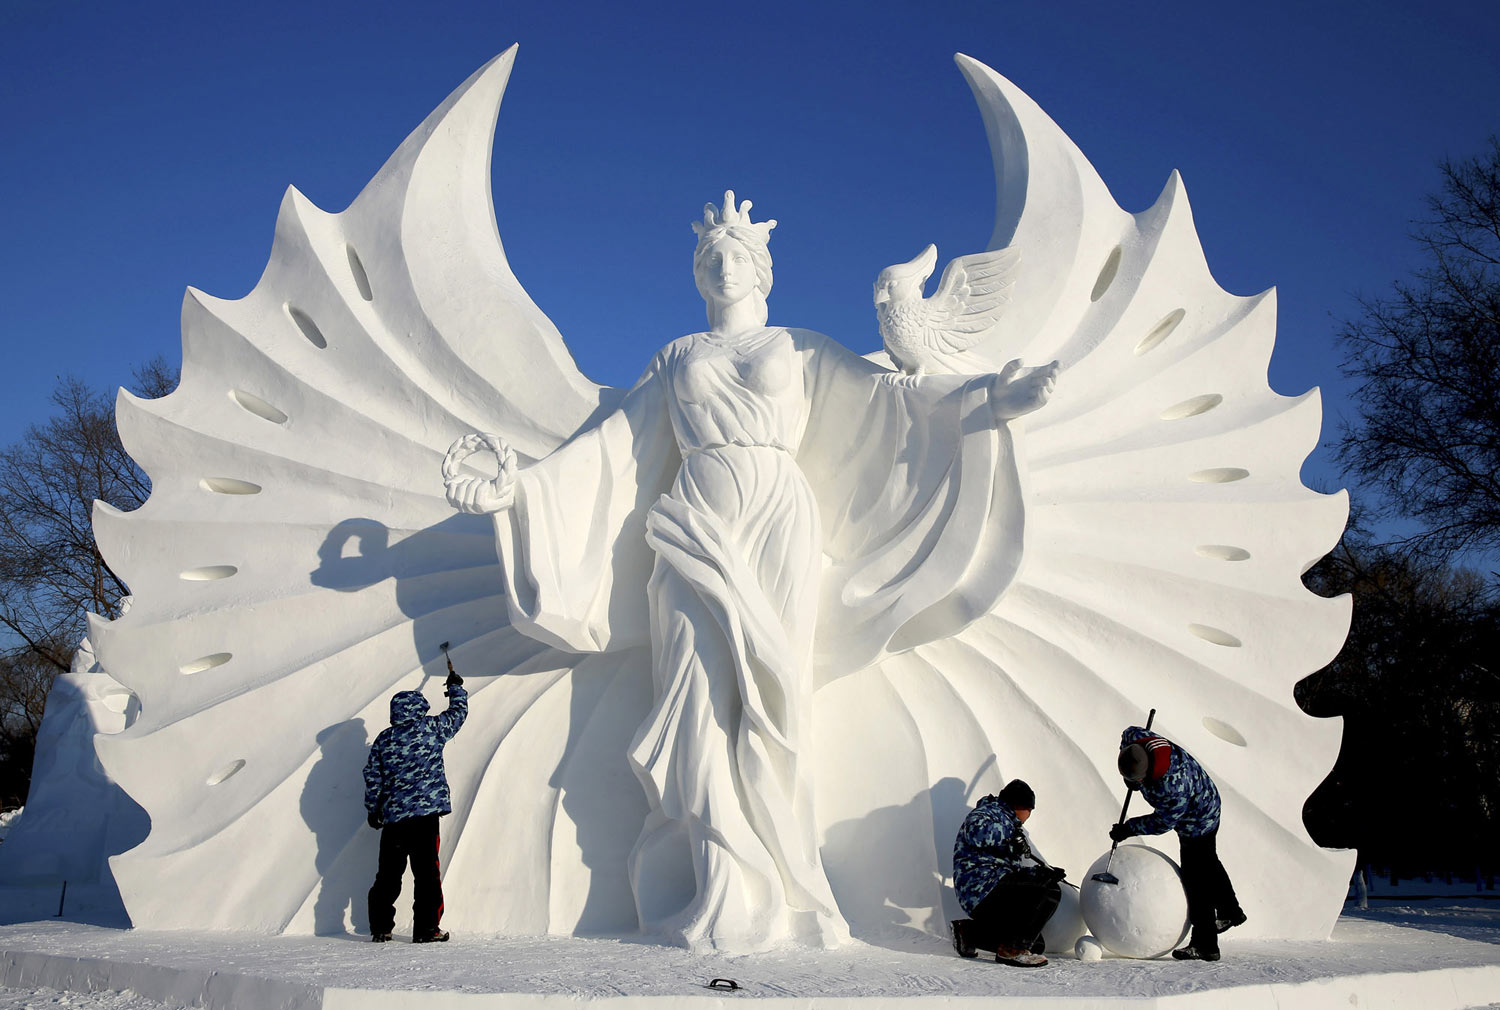 Αποτέλεσμα εικόνας για china festival snow ice sculpture